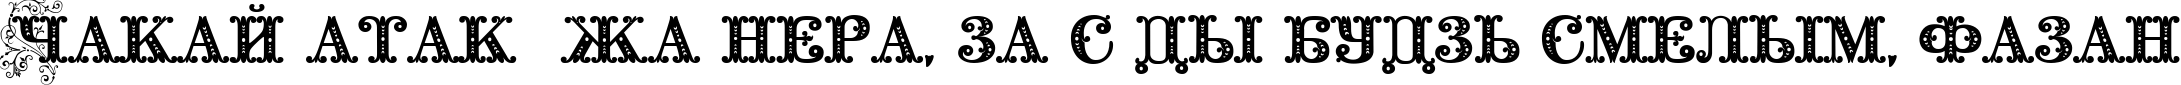 Пример написания шрифтом Barocco Floral Initial текста на белорусском